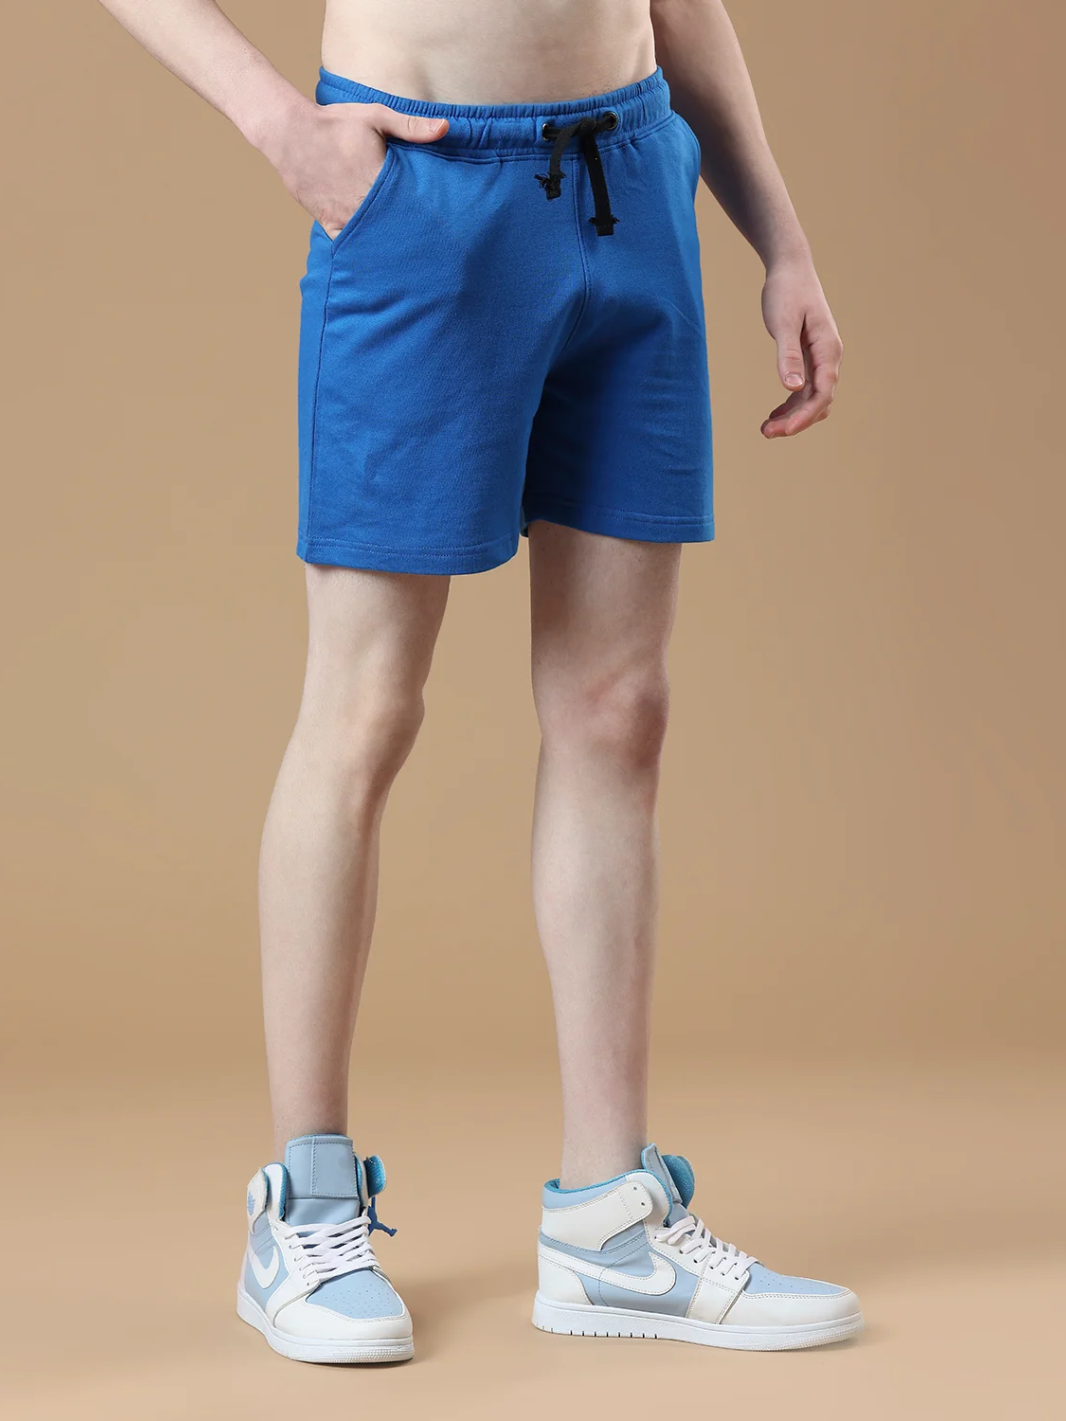 Men's Royal Blue Casual Shorts